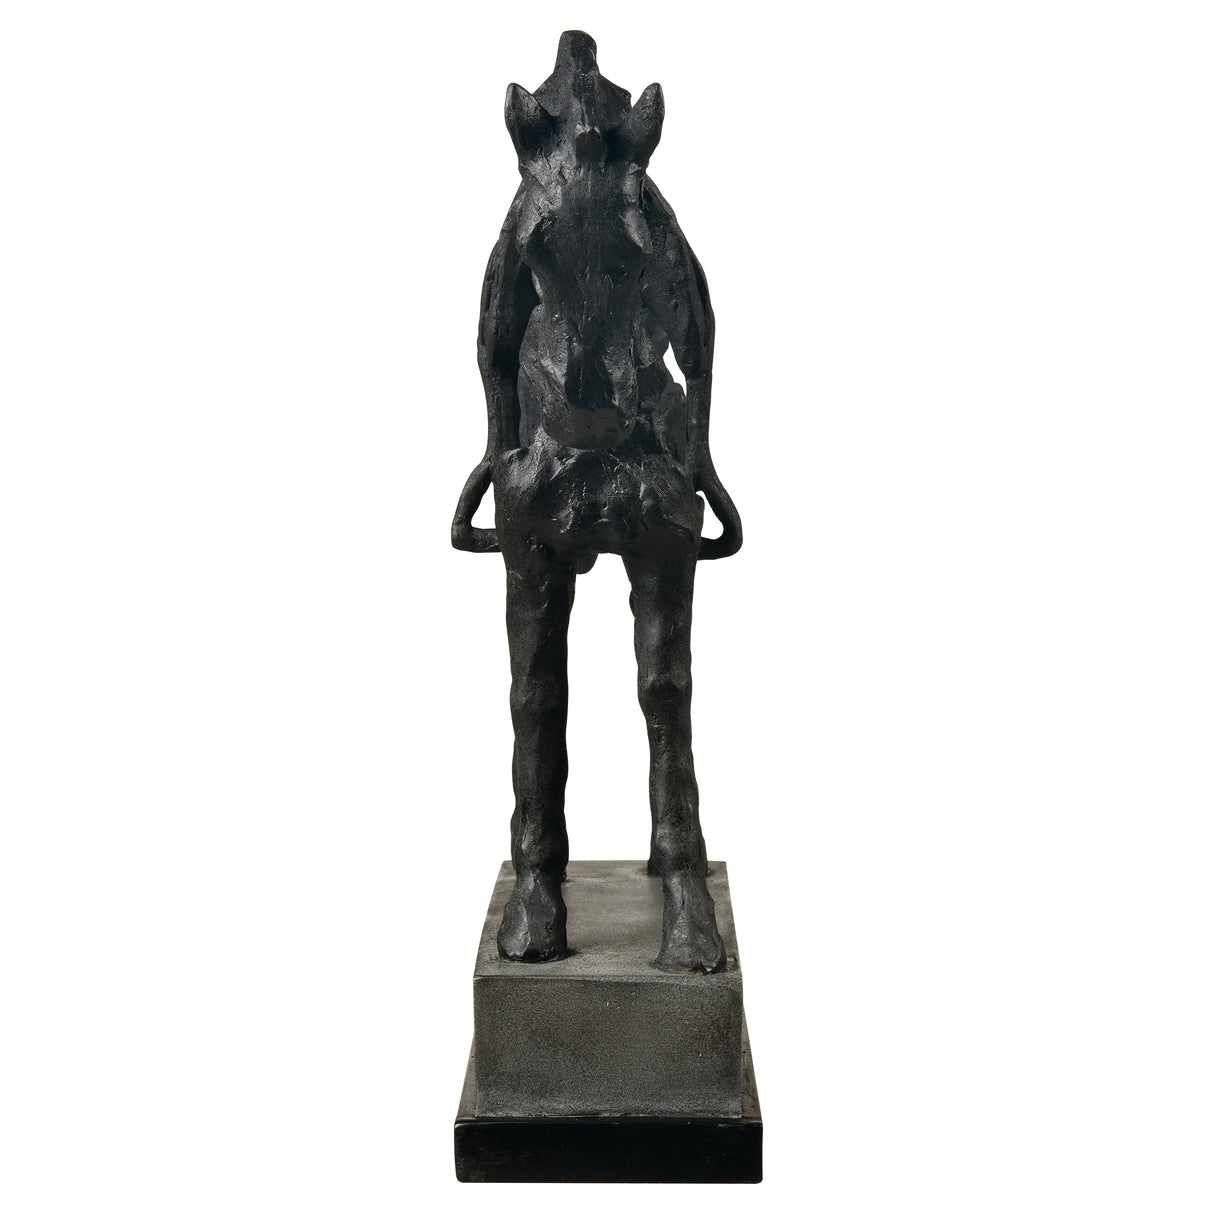 Elk S0037-12029 Noble Sculpture - Aged Black